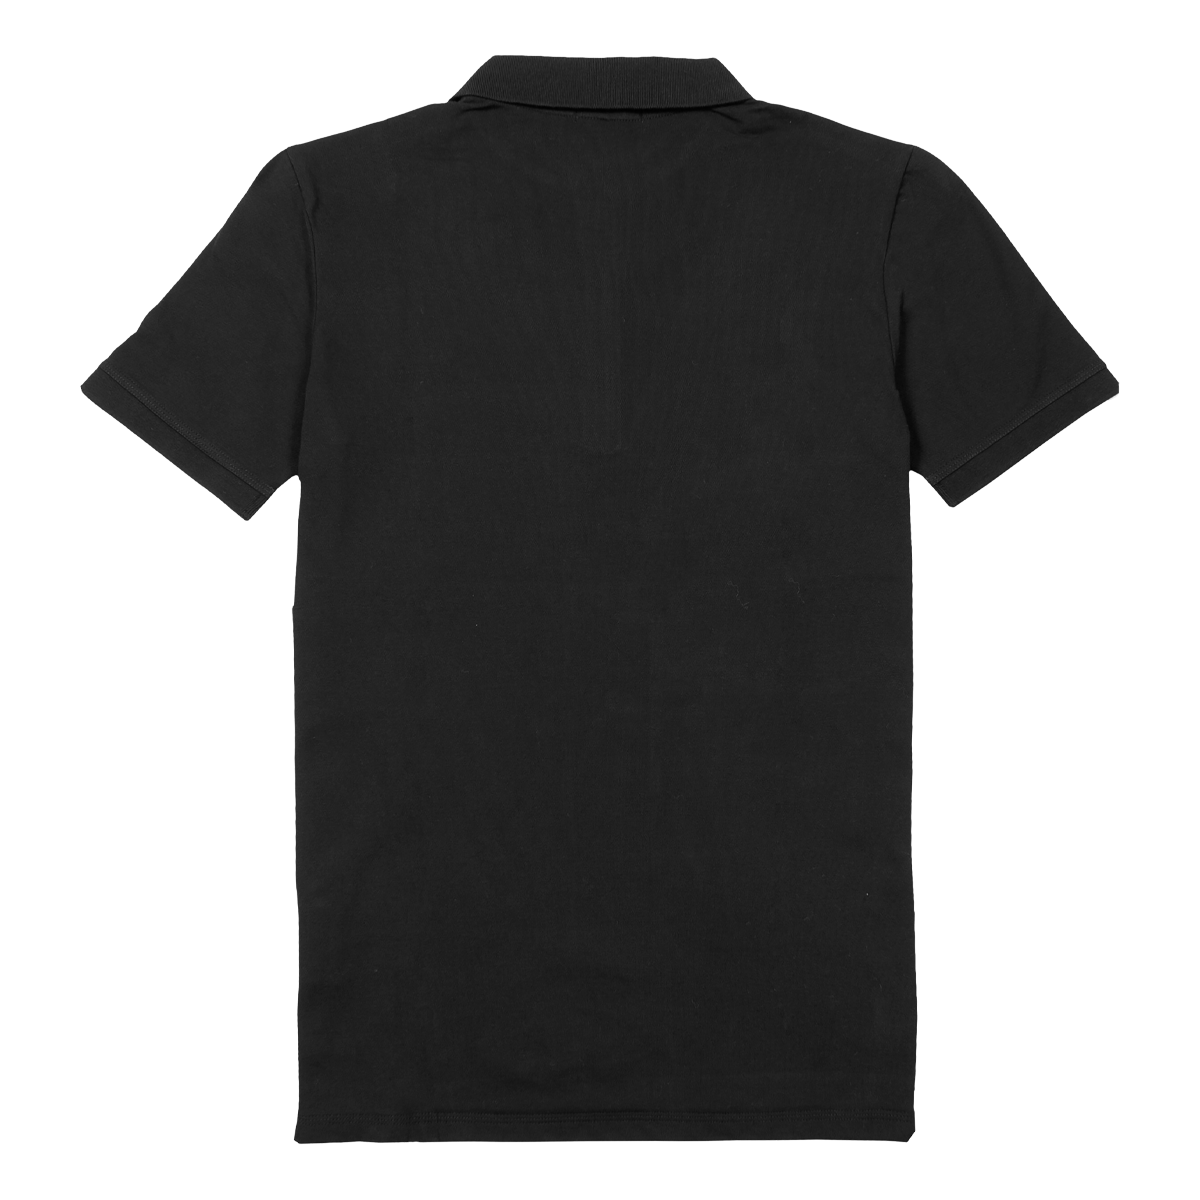 TMC Polo Tee - Black-The Marathon Clothing